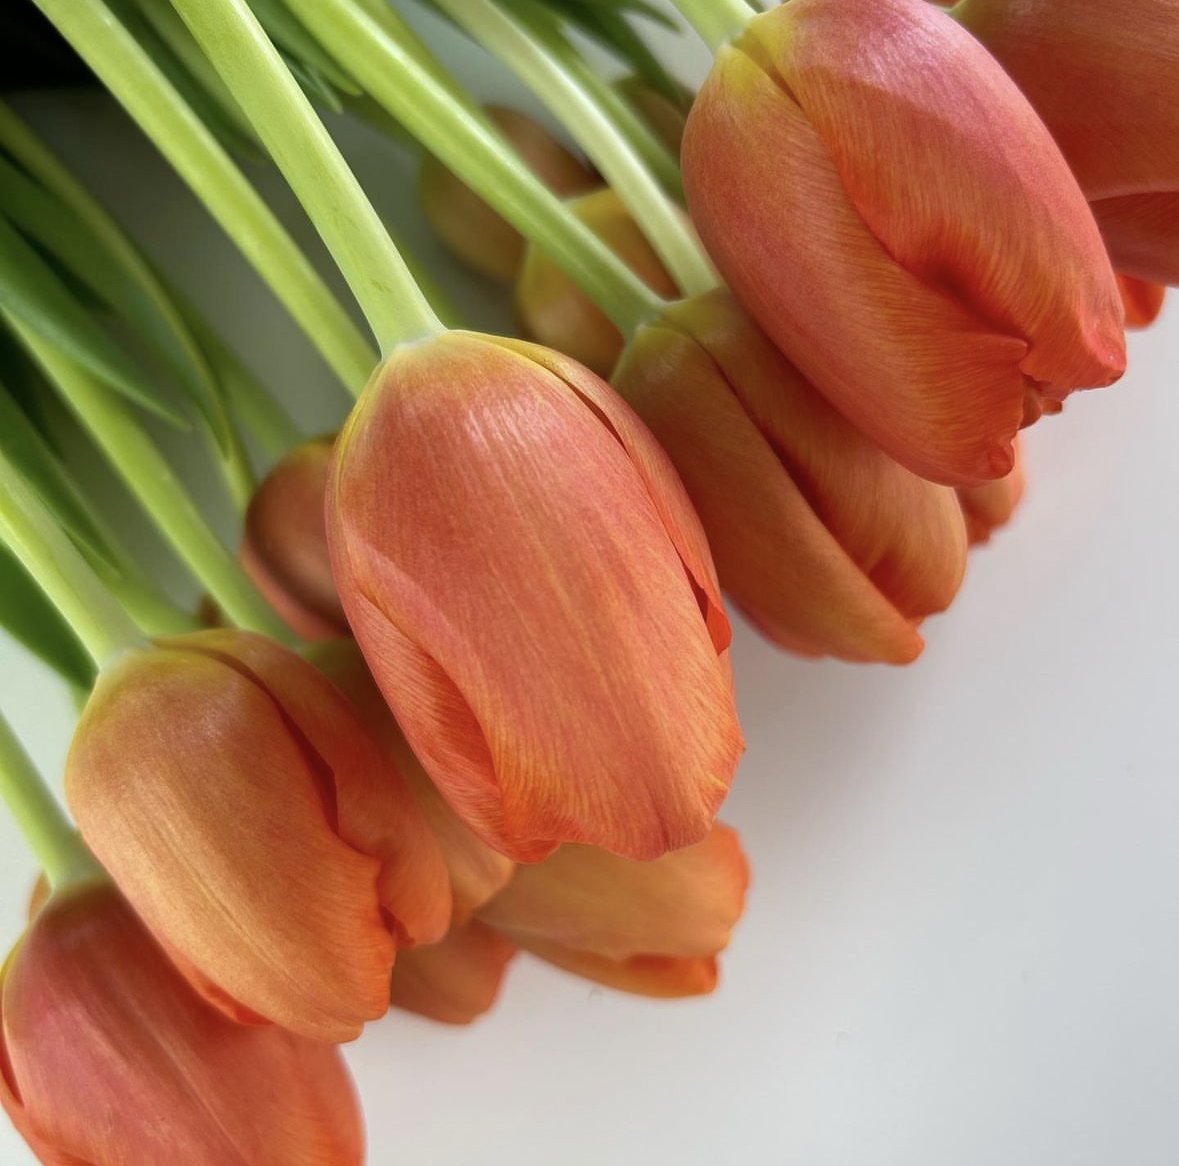 tulips to buy in australia 14.jpg